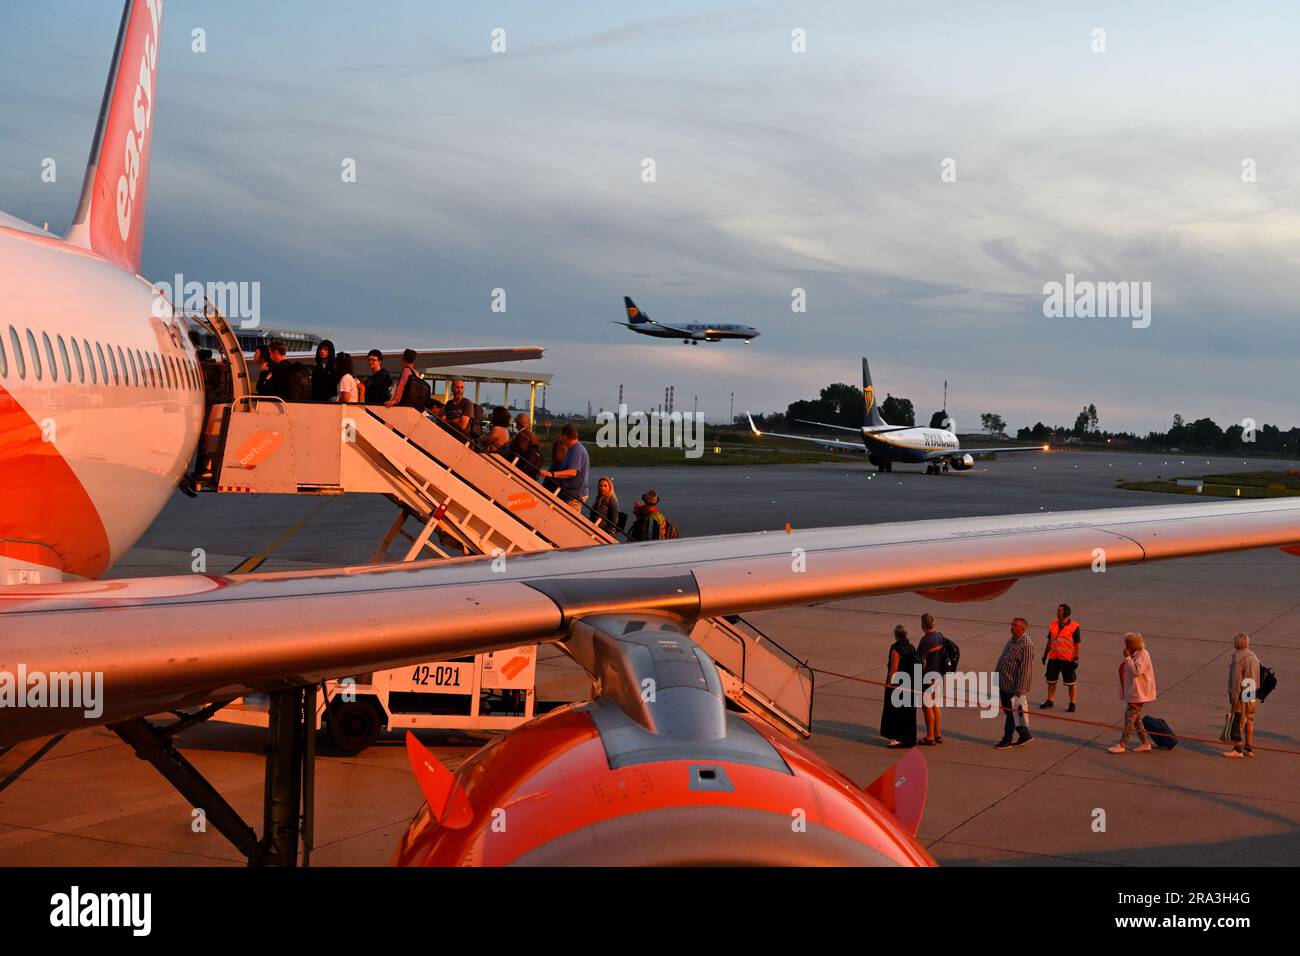 Am Abend, easyJet Flugzeug mit Passagieren, die hinten einsteigen, mit einem anderen Flugzeug, das an Land kommt und das dritte auf der Landebahn, Flughafen Porto, Portugal Stockfoto